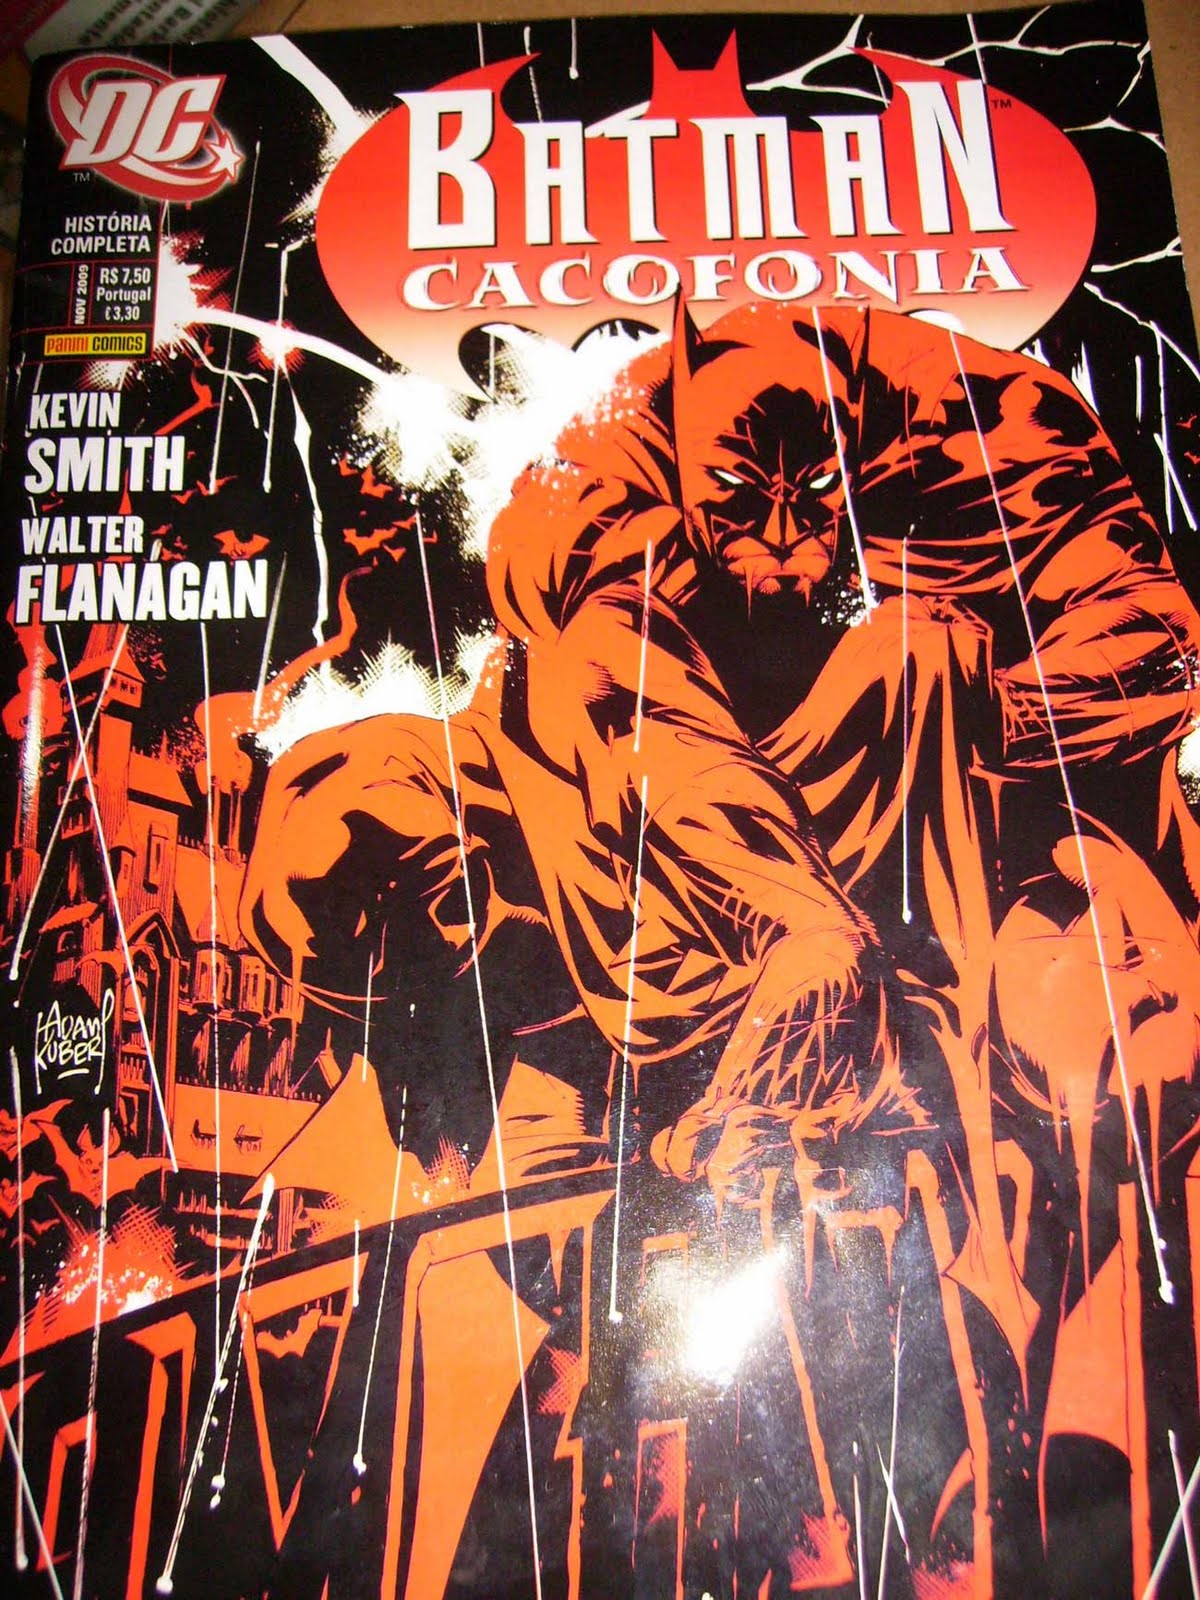 ZONA FRANCA COMICS: BATMAN CACOFONIA - KEVIN SIMITH -